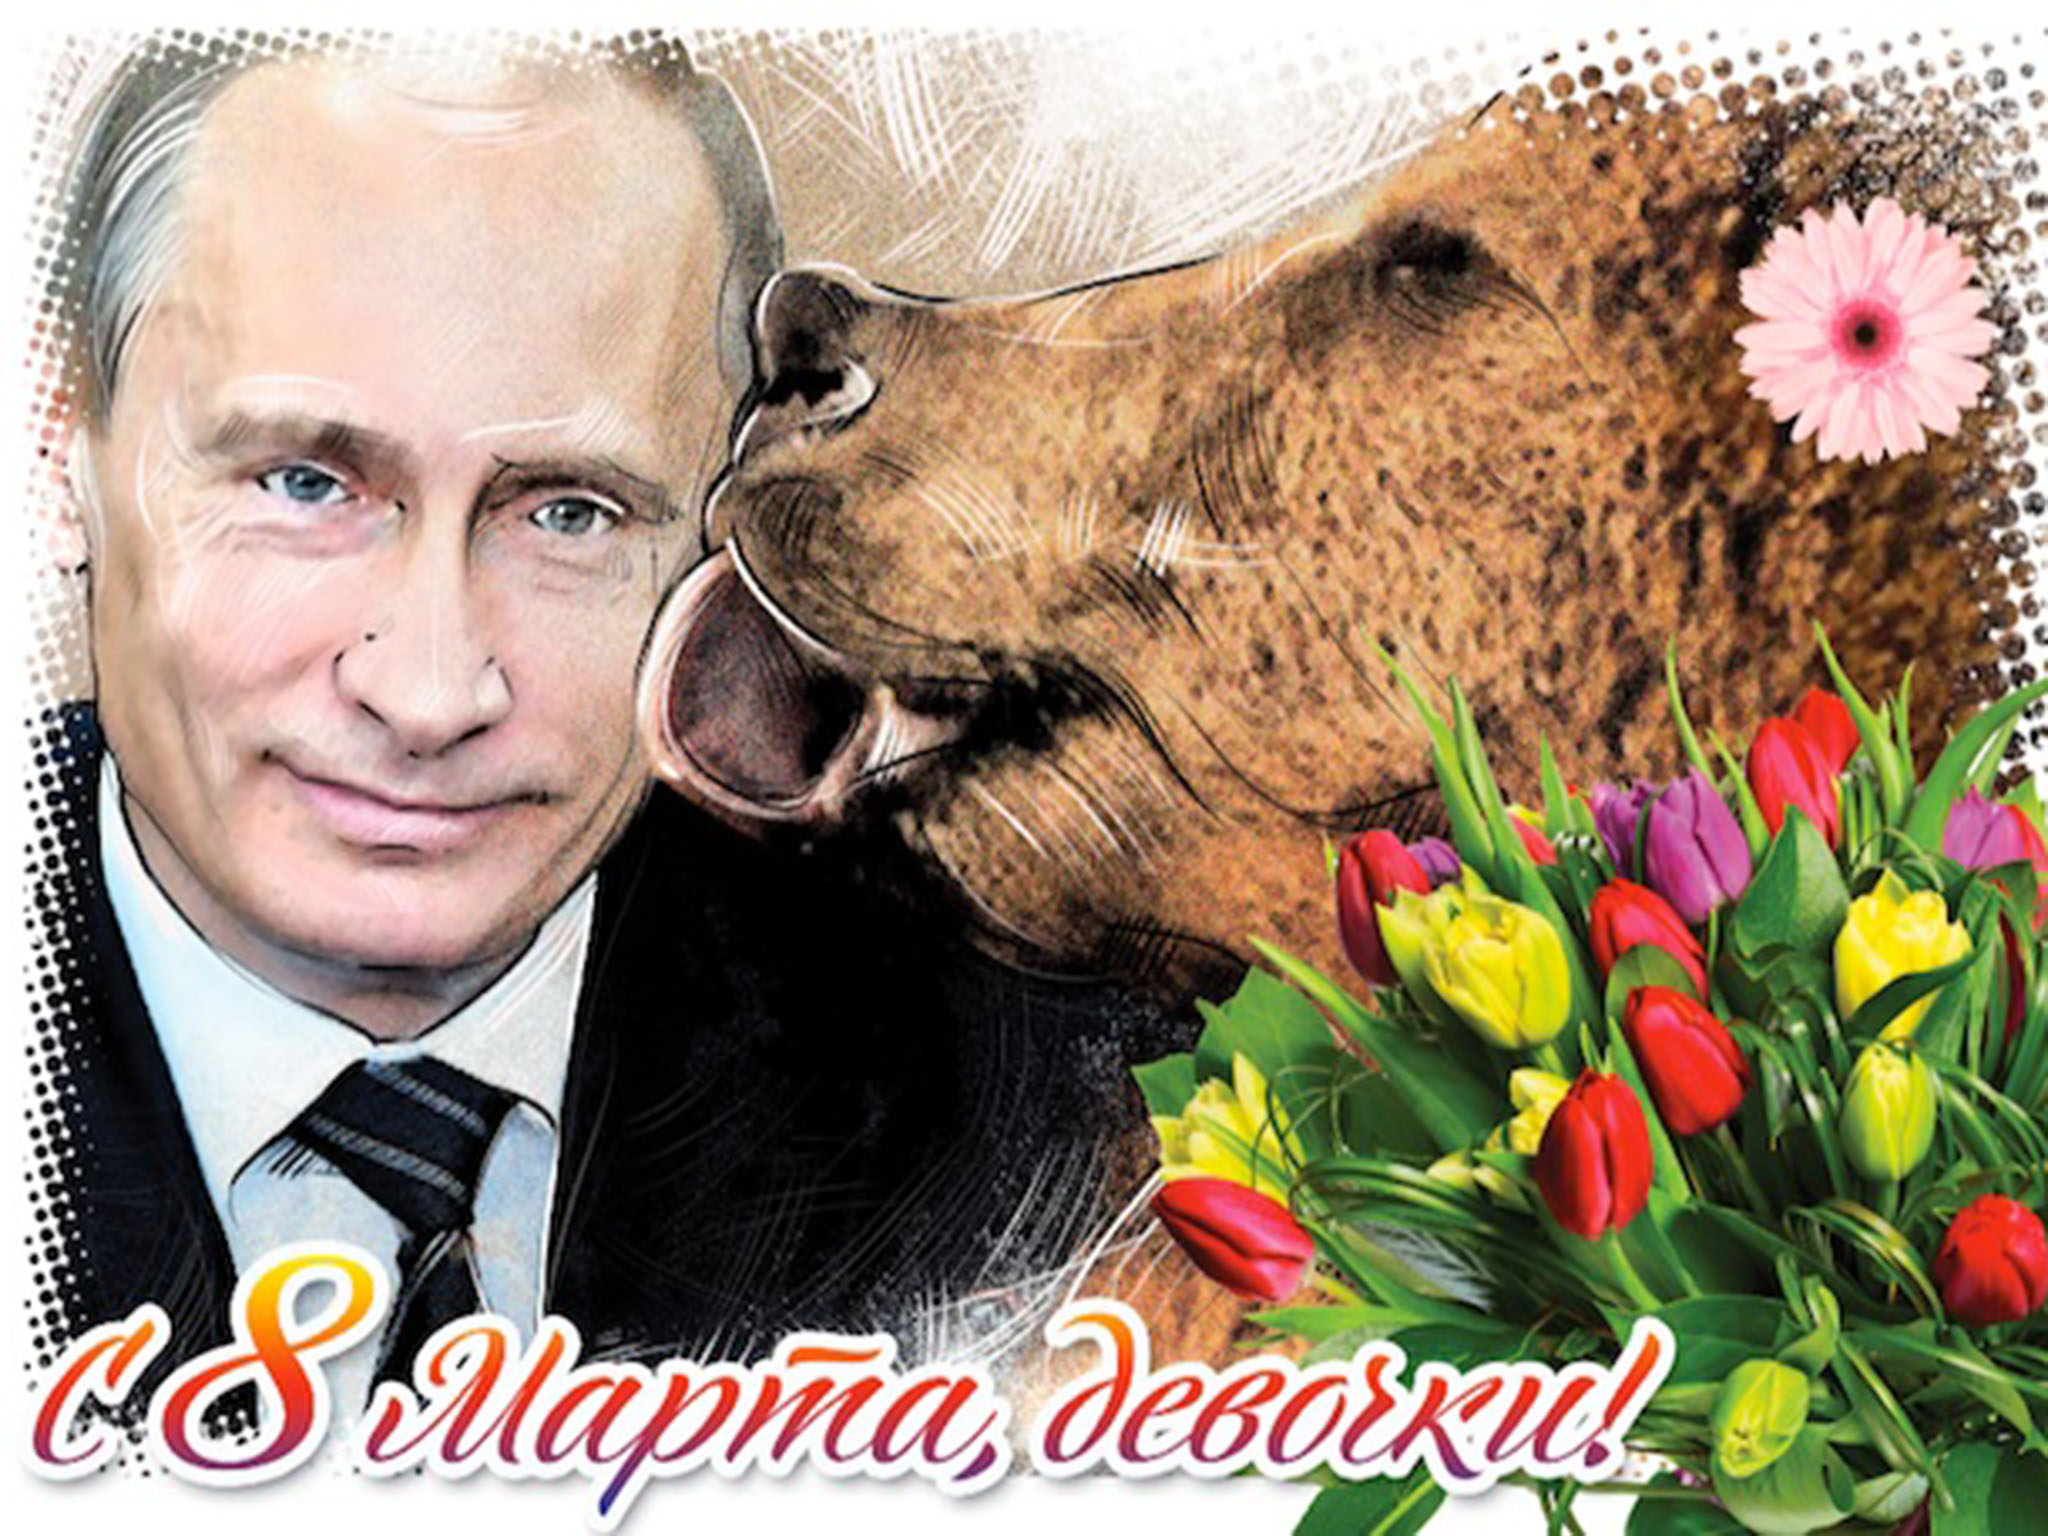 Russian Magazine Puts President Vladimir Putin Being